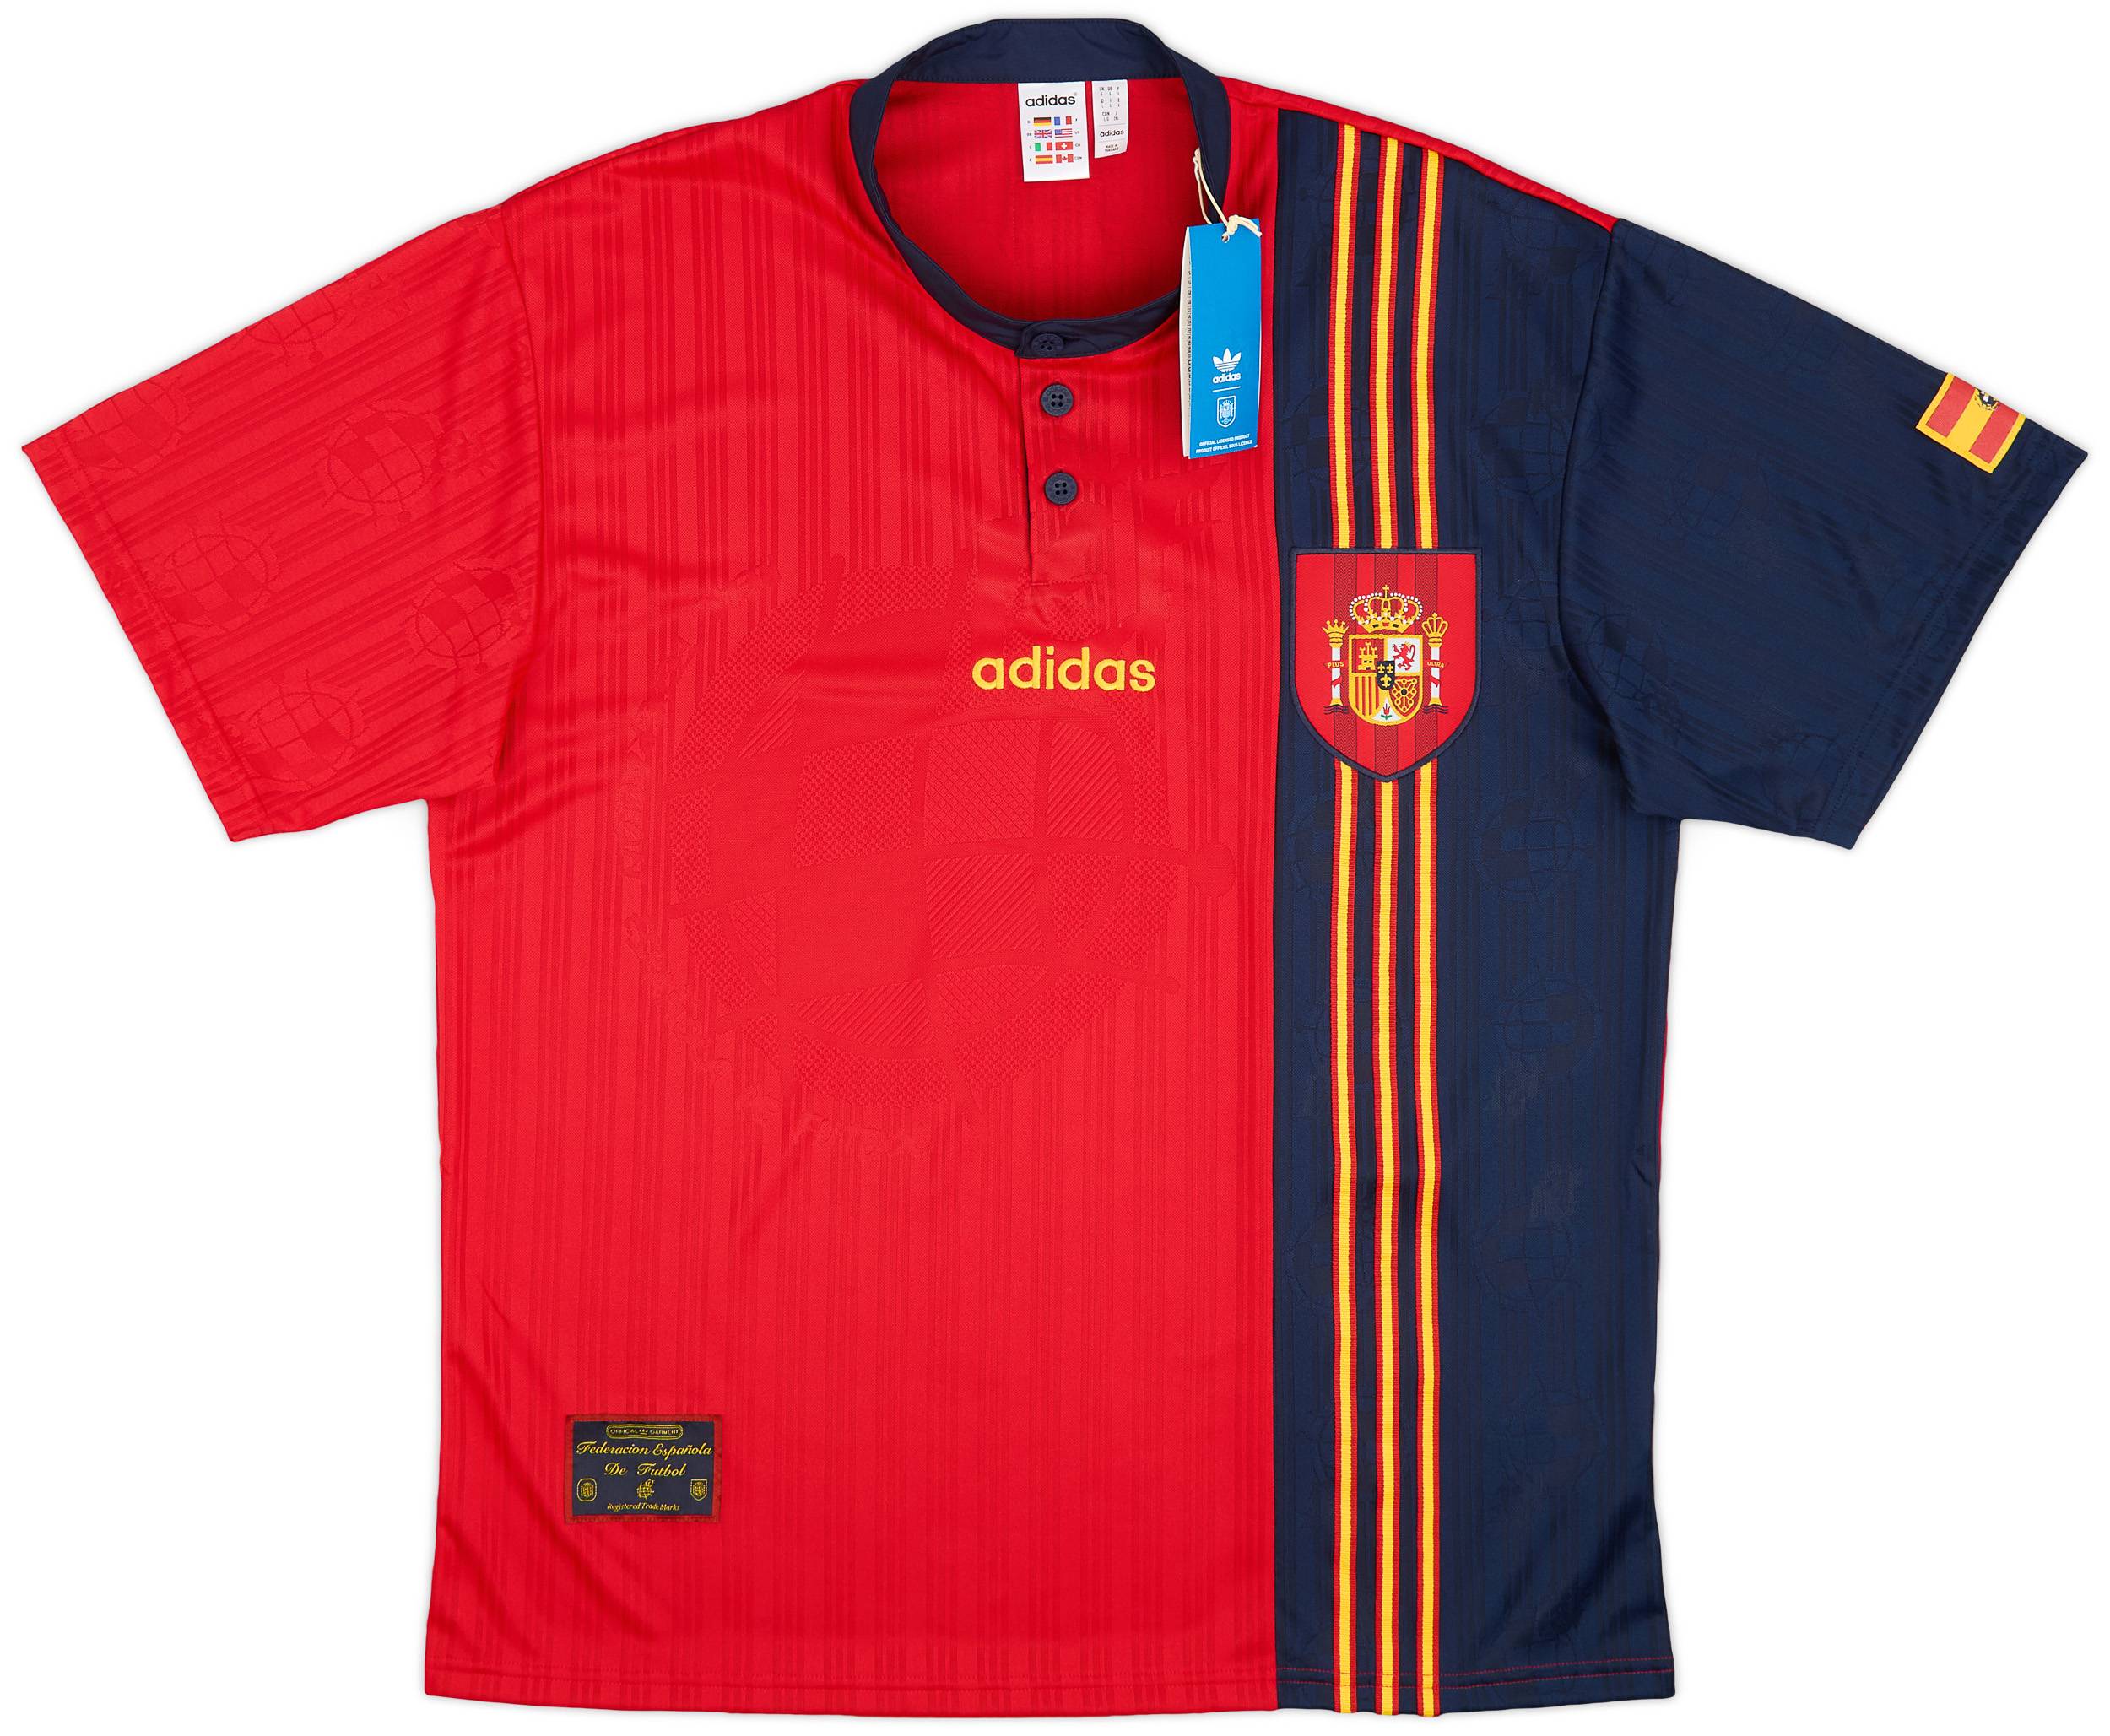 1996 Spain adidas Originals Reissue Home Shirt